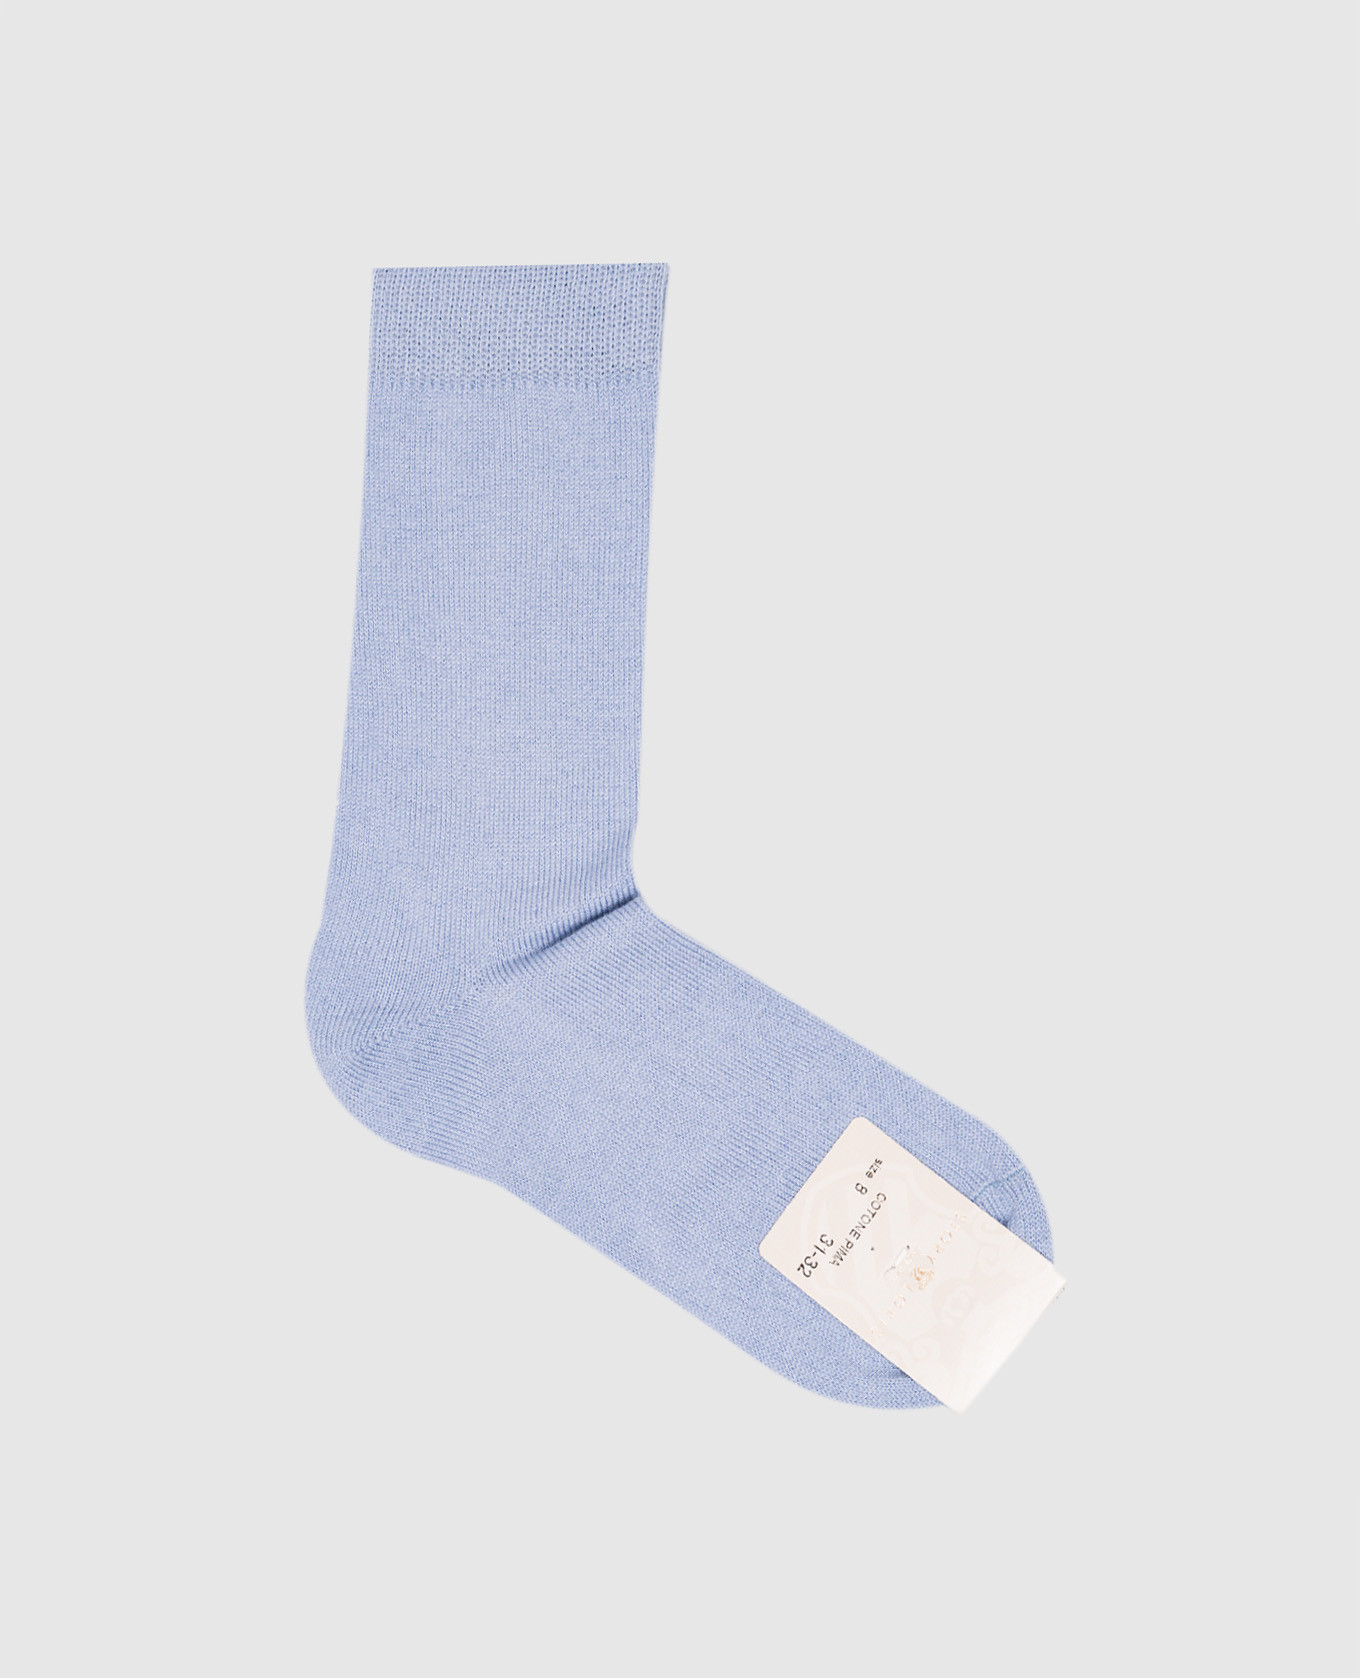 Children's blue socks